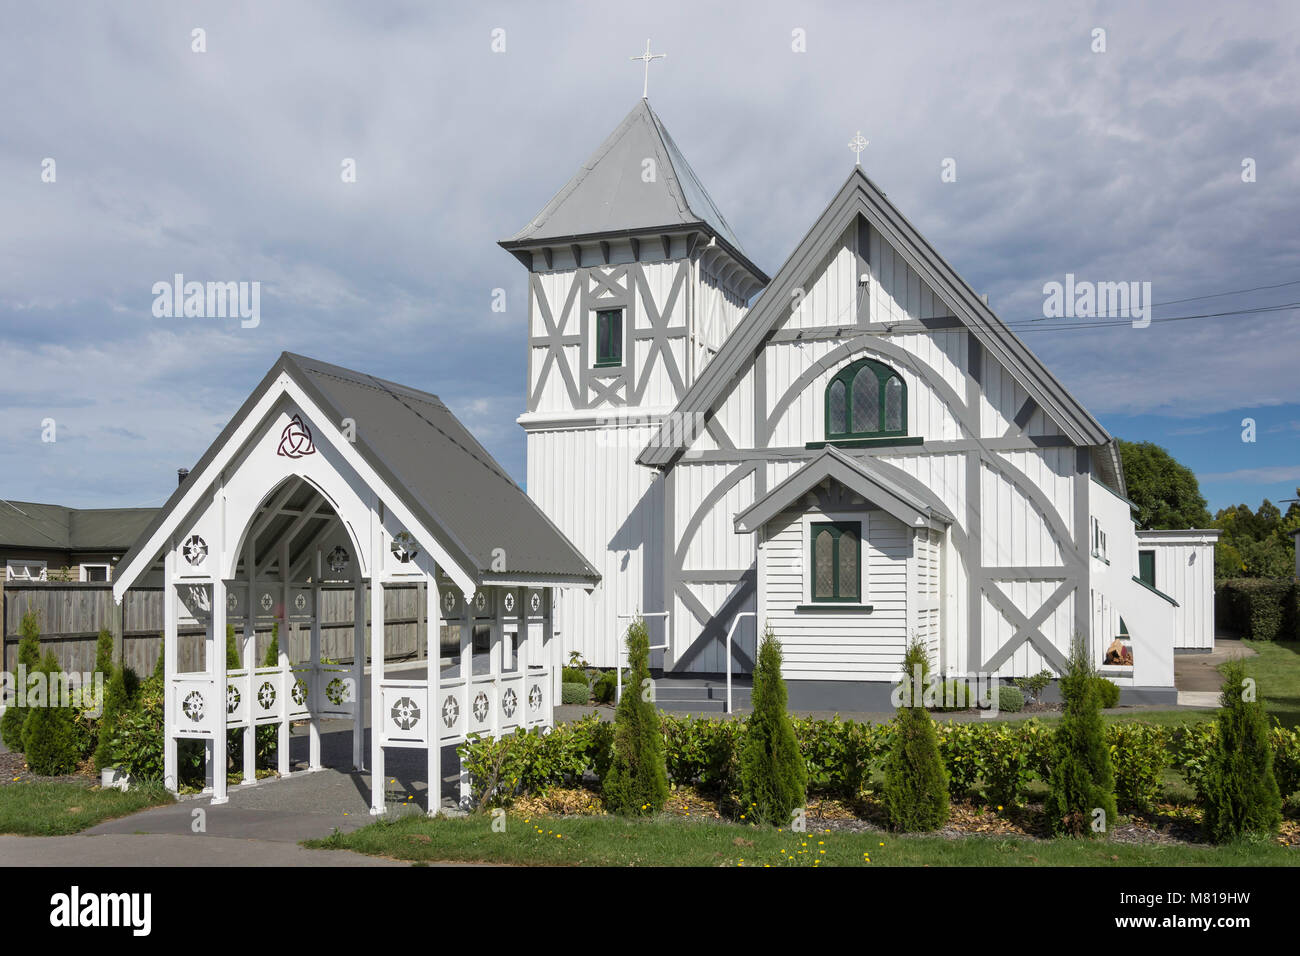 Storica chiesa della Santa Passione di Nostro Signore, carradori Road, Amberley, regione di Canterbury, Nuova Zelanda Foto Stock